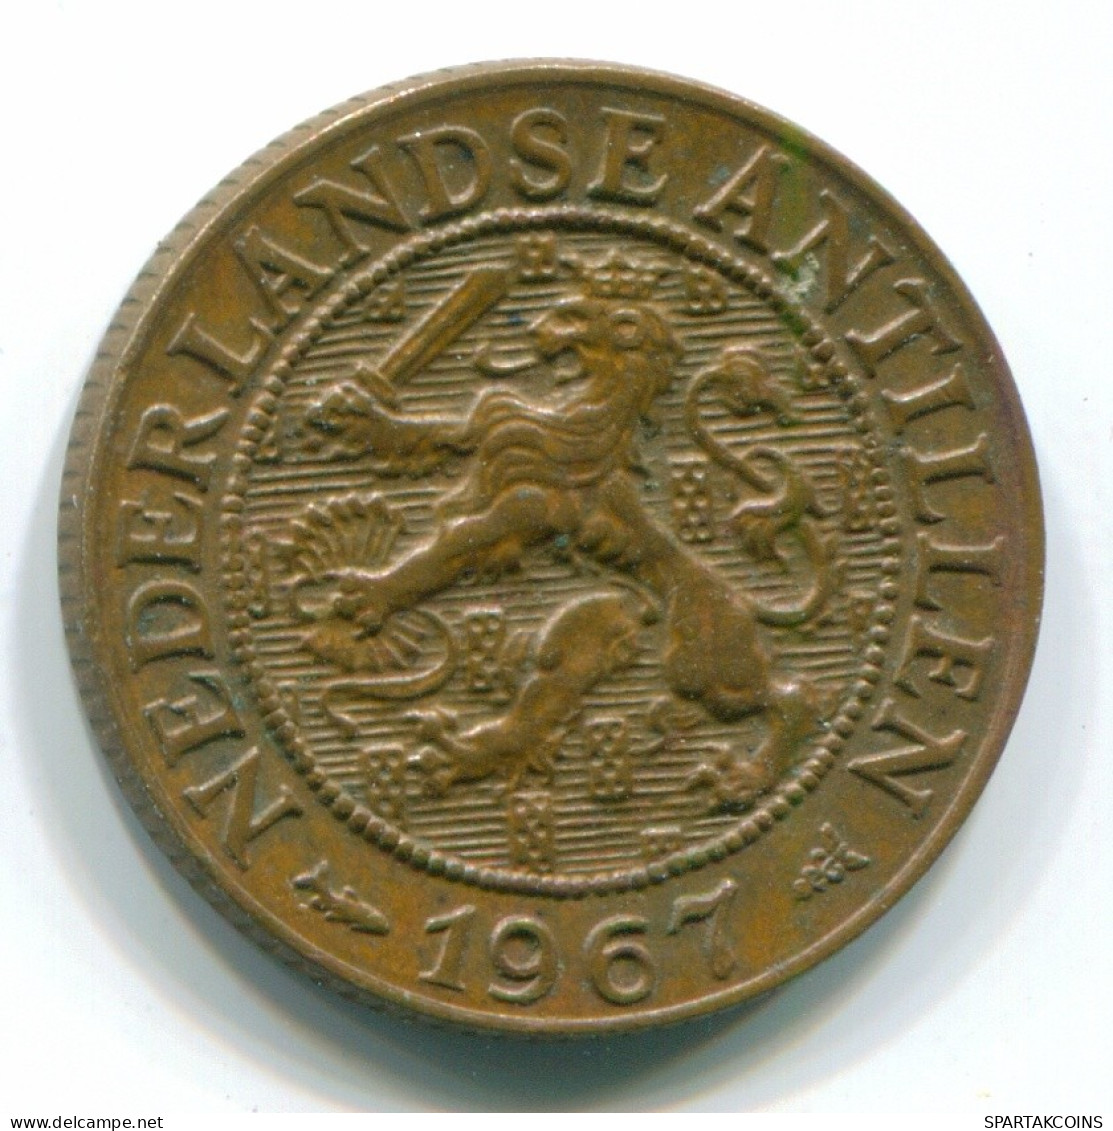 1 CENT 1967 NIEDERLÄNDISCHE ANTILLEN Bronze Fish Koloniale Münze #S11135.D.A - Niederländische Antillen